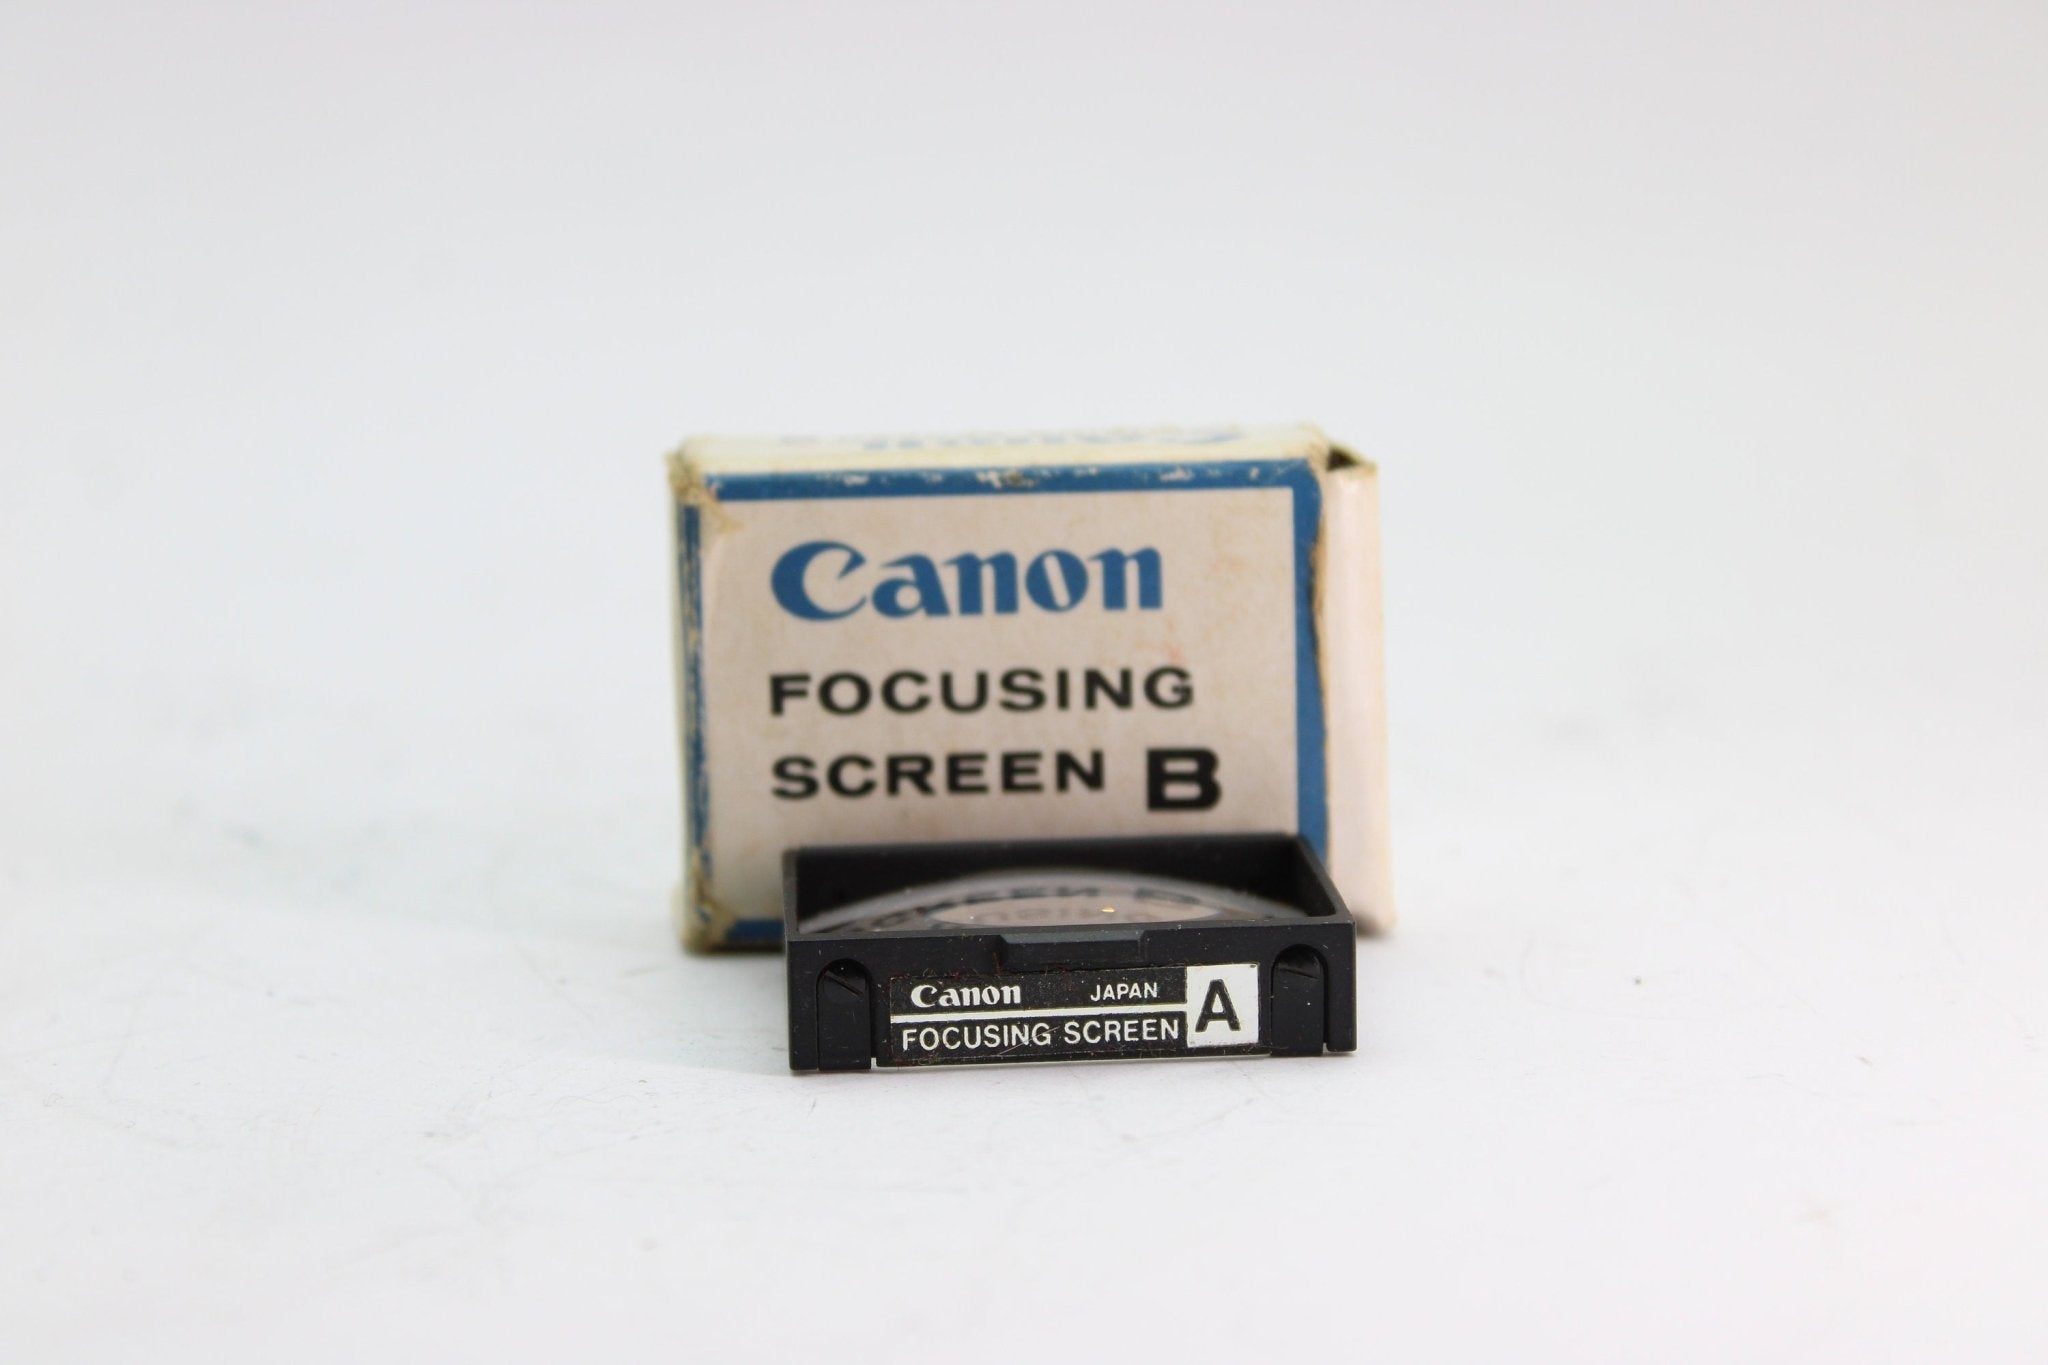 Canon Focusing Screen A - Canon